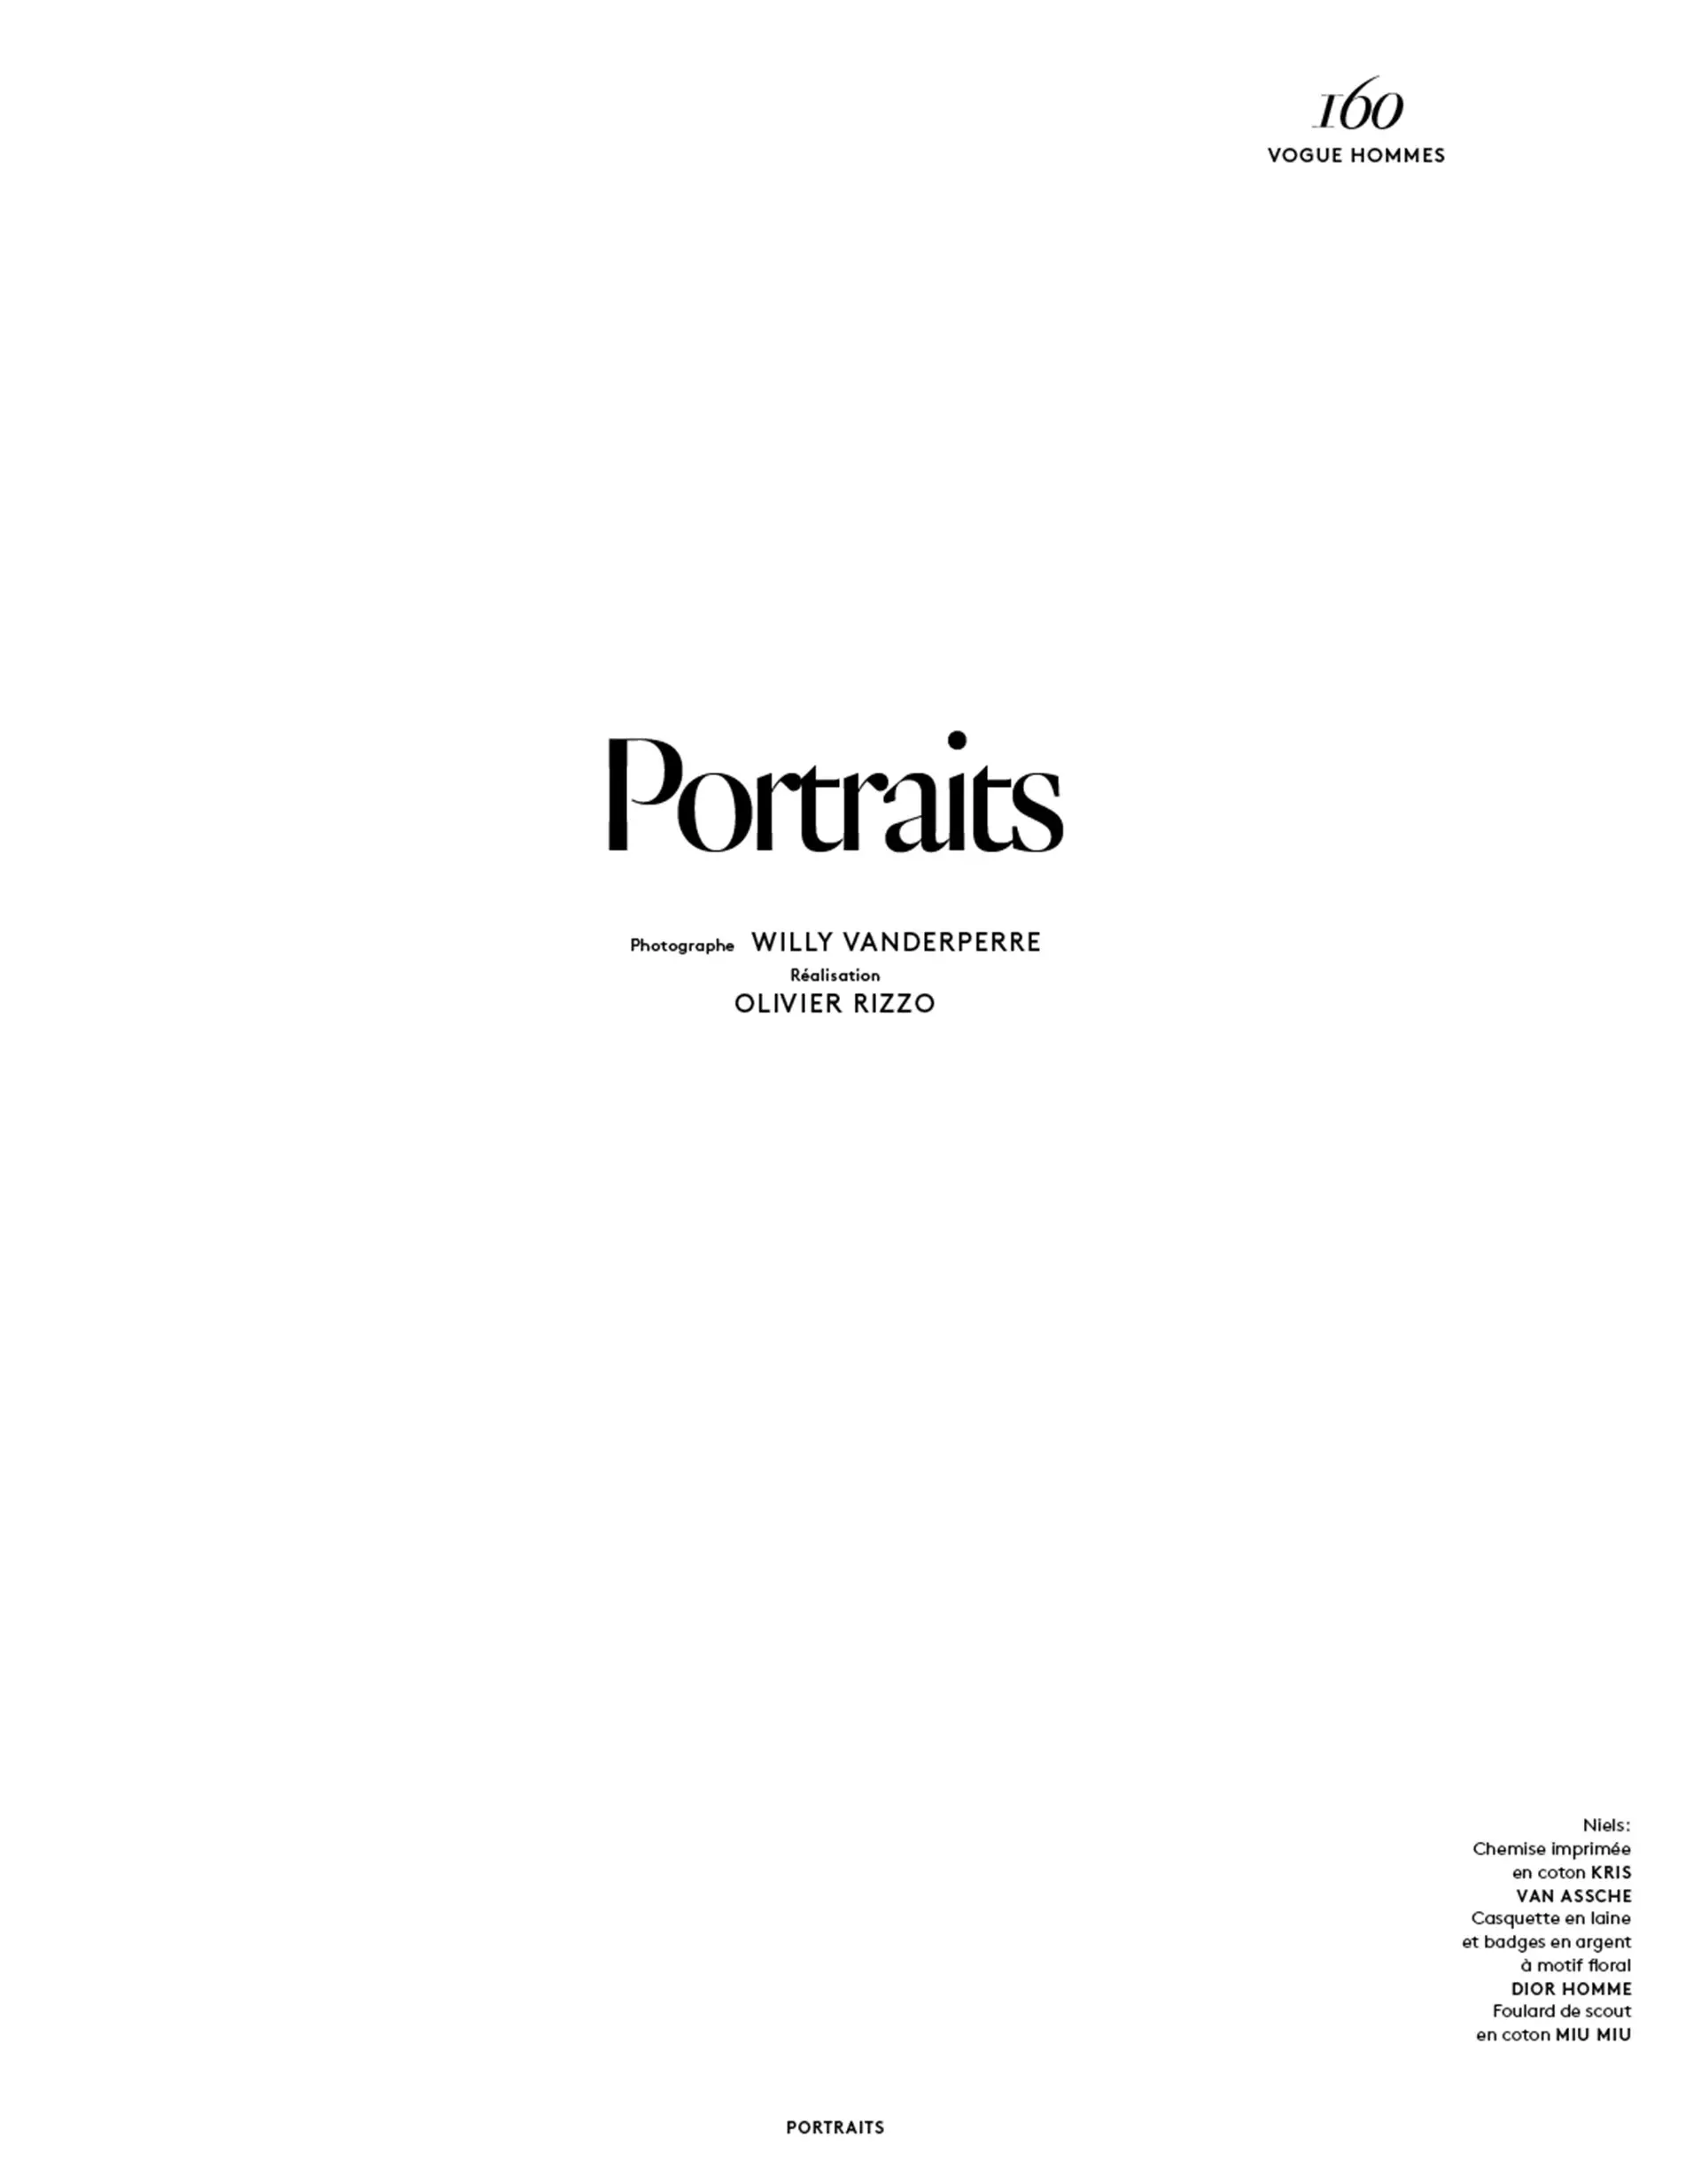 వోగ్ హోమ్స్ ఇంటర్నేషనల్ S/S 2015: పోర్ట్రెయిట్స్